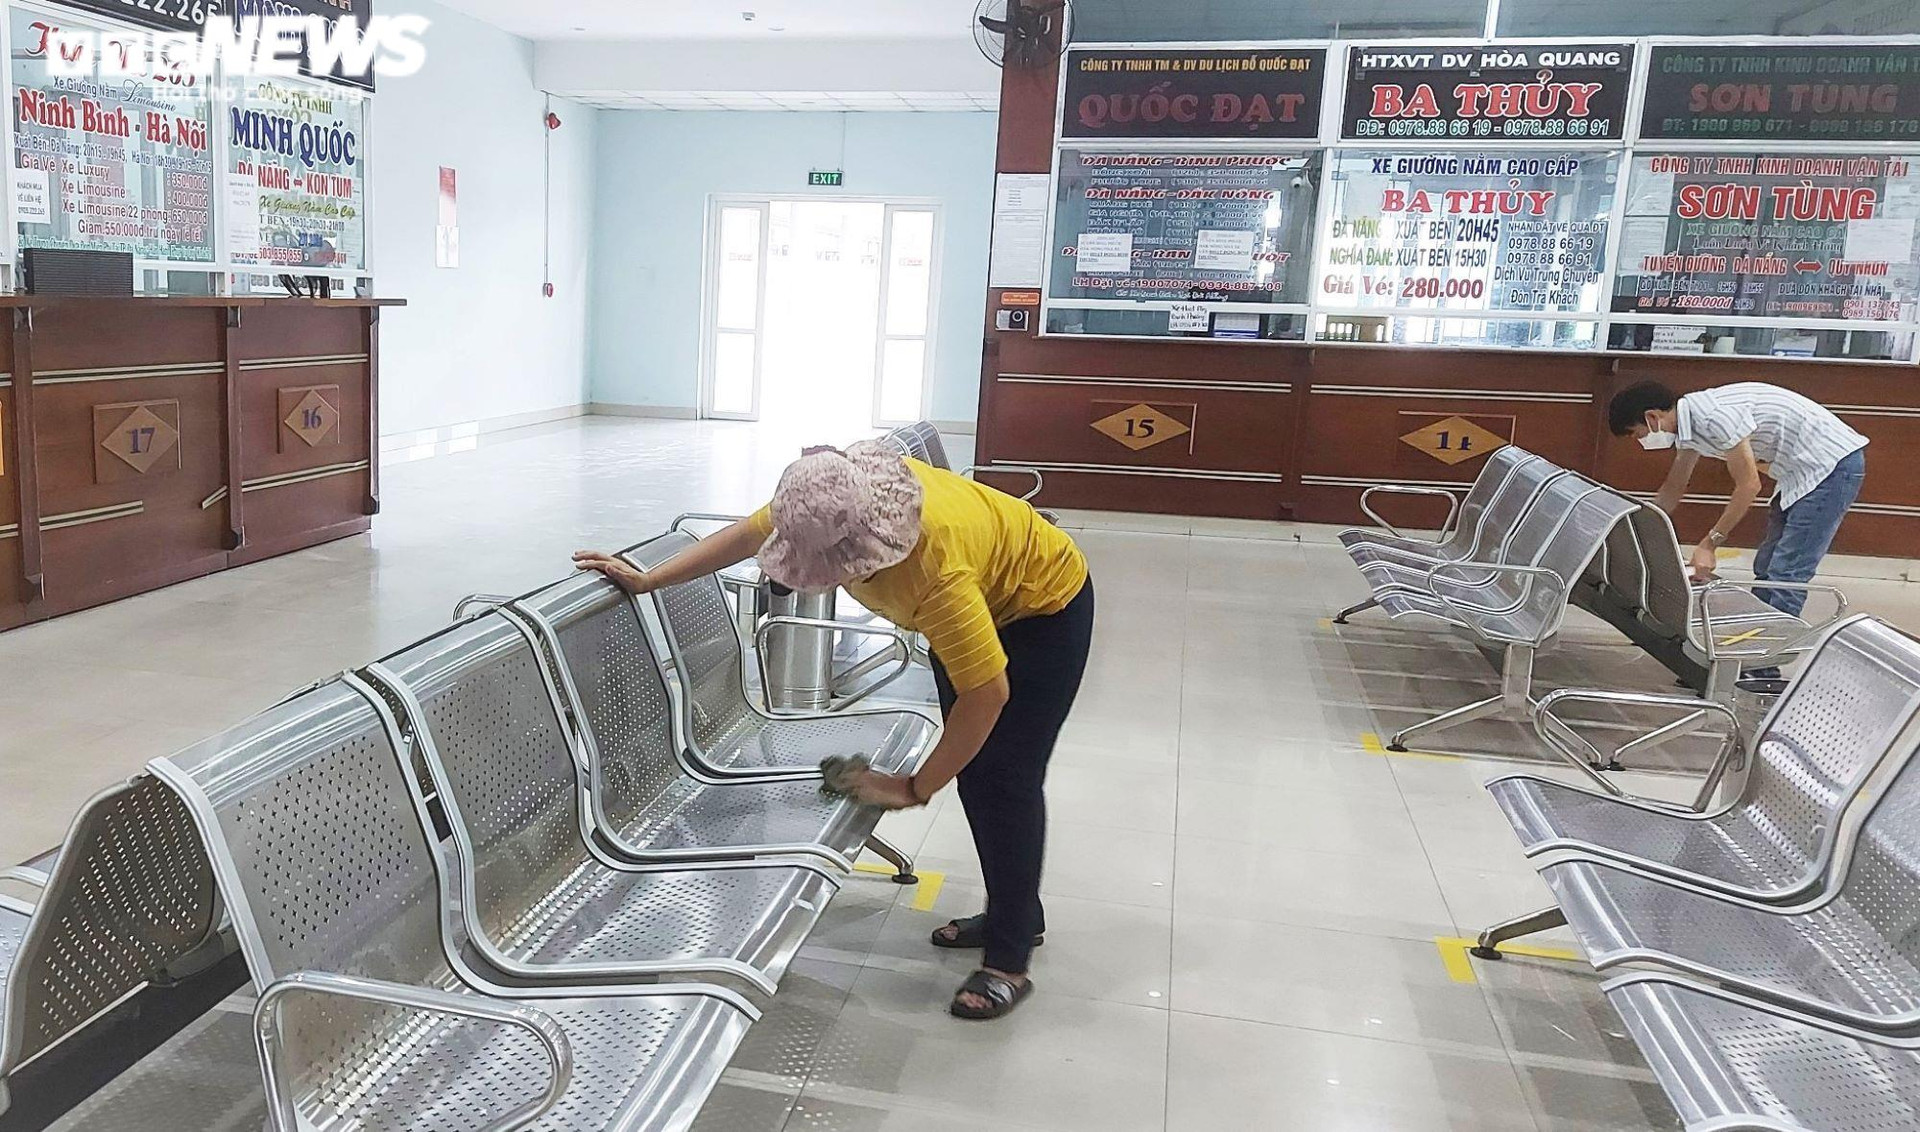 Vận tải hành khách liên tỉnh ngày đầu hoạt động: Bến xe Đà Nẵng vắng ngắt - 3